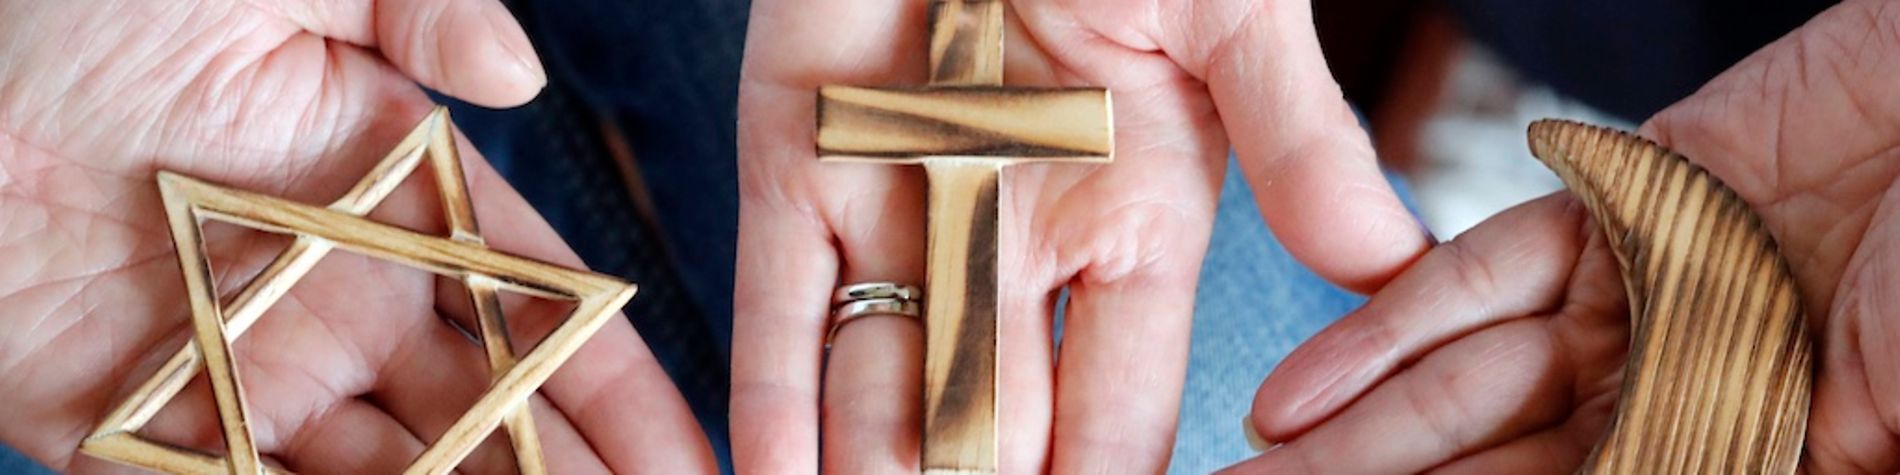 Drei Hände halten jeweils ein religiöses Symbol.